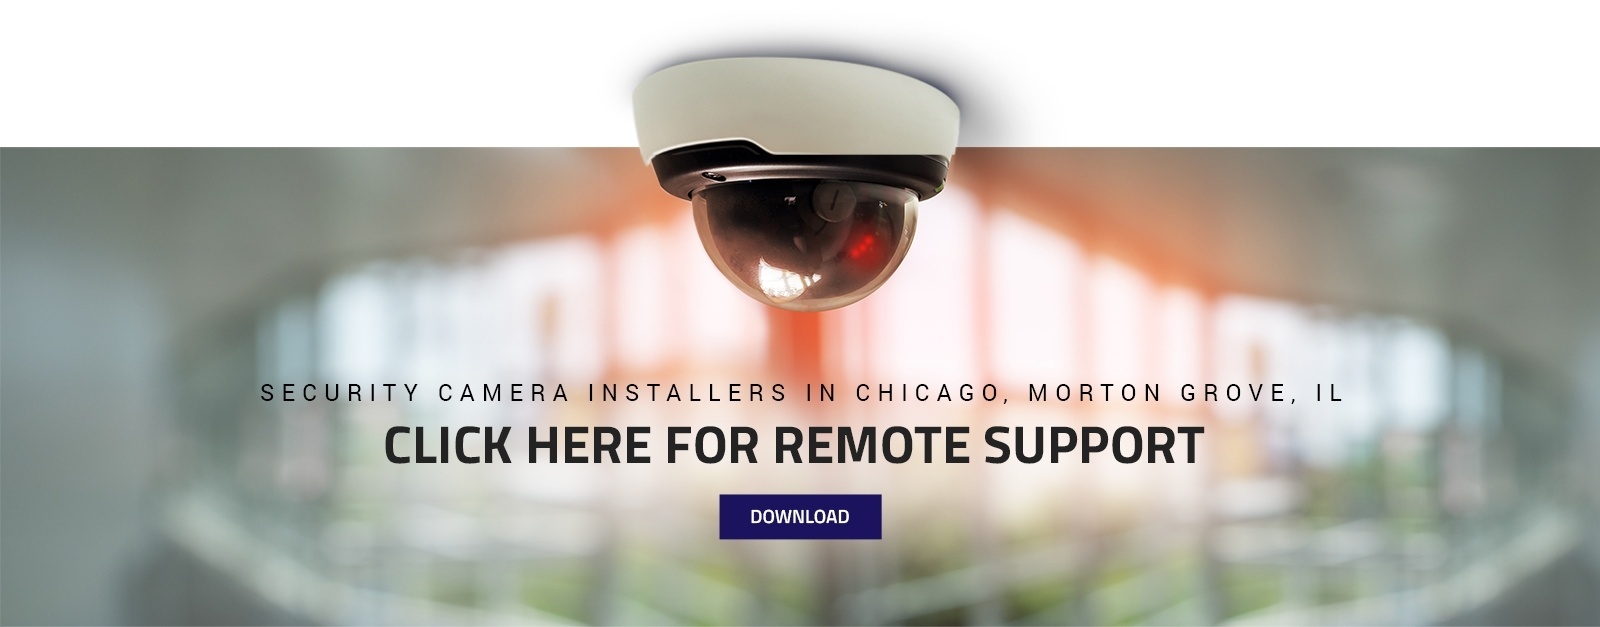 Security Cameras Chicago